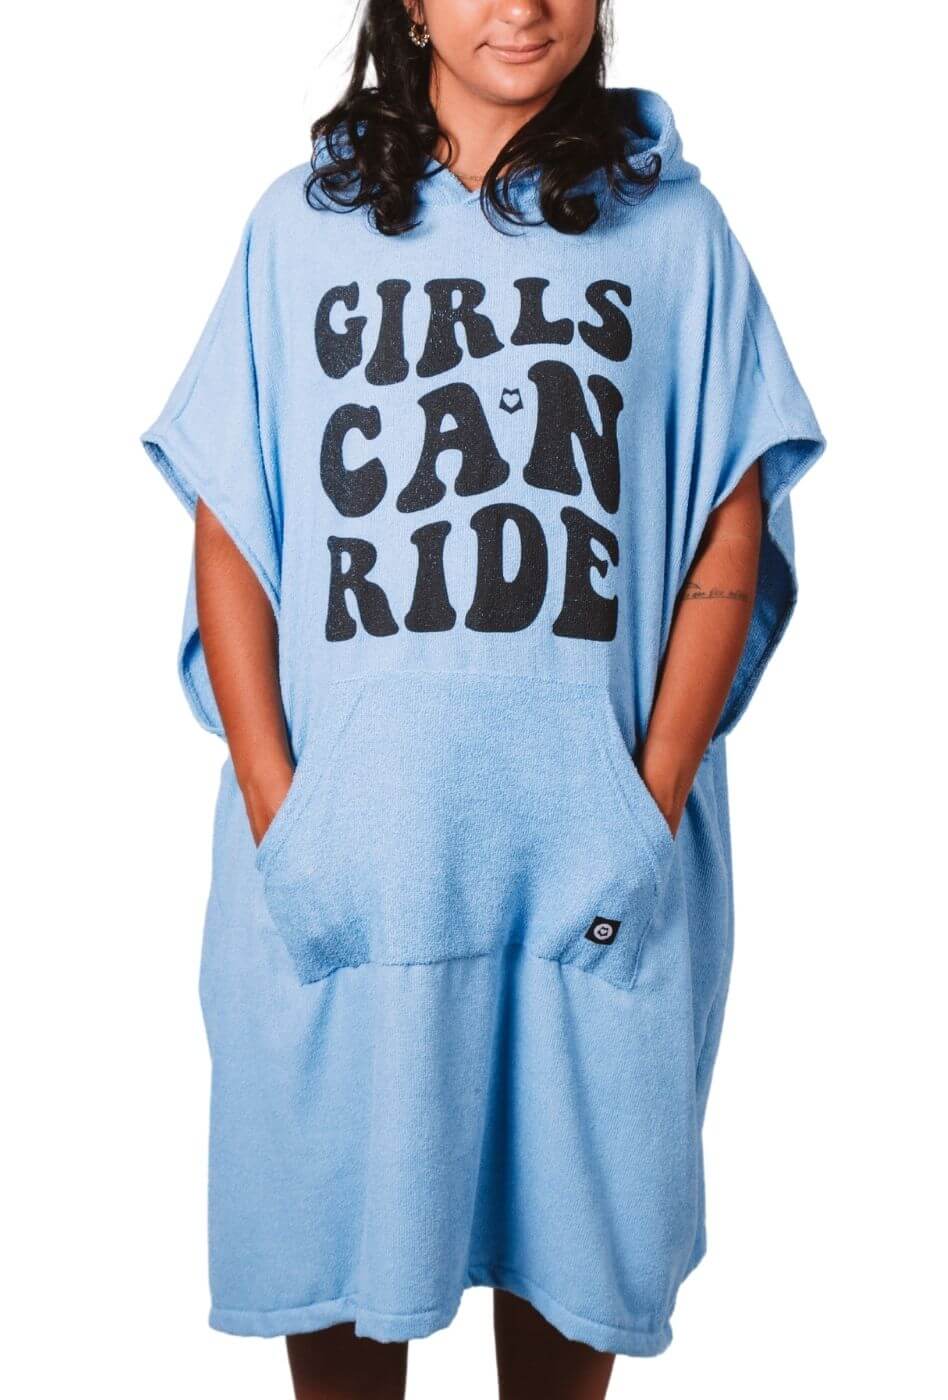 Poncho atoalhado de surf - Girls can ride Azul | Roupão de surfista